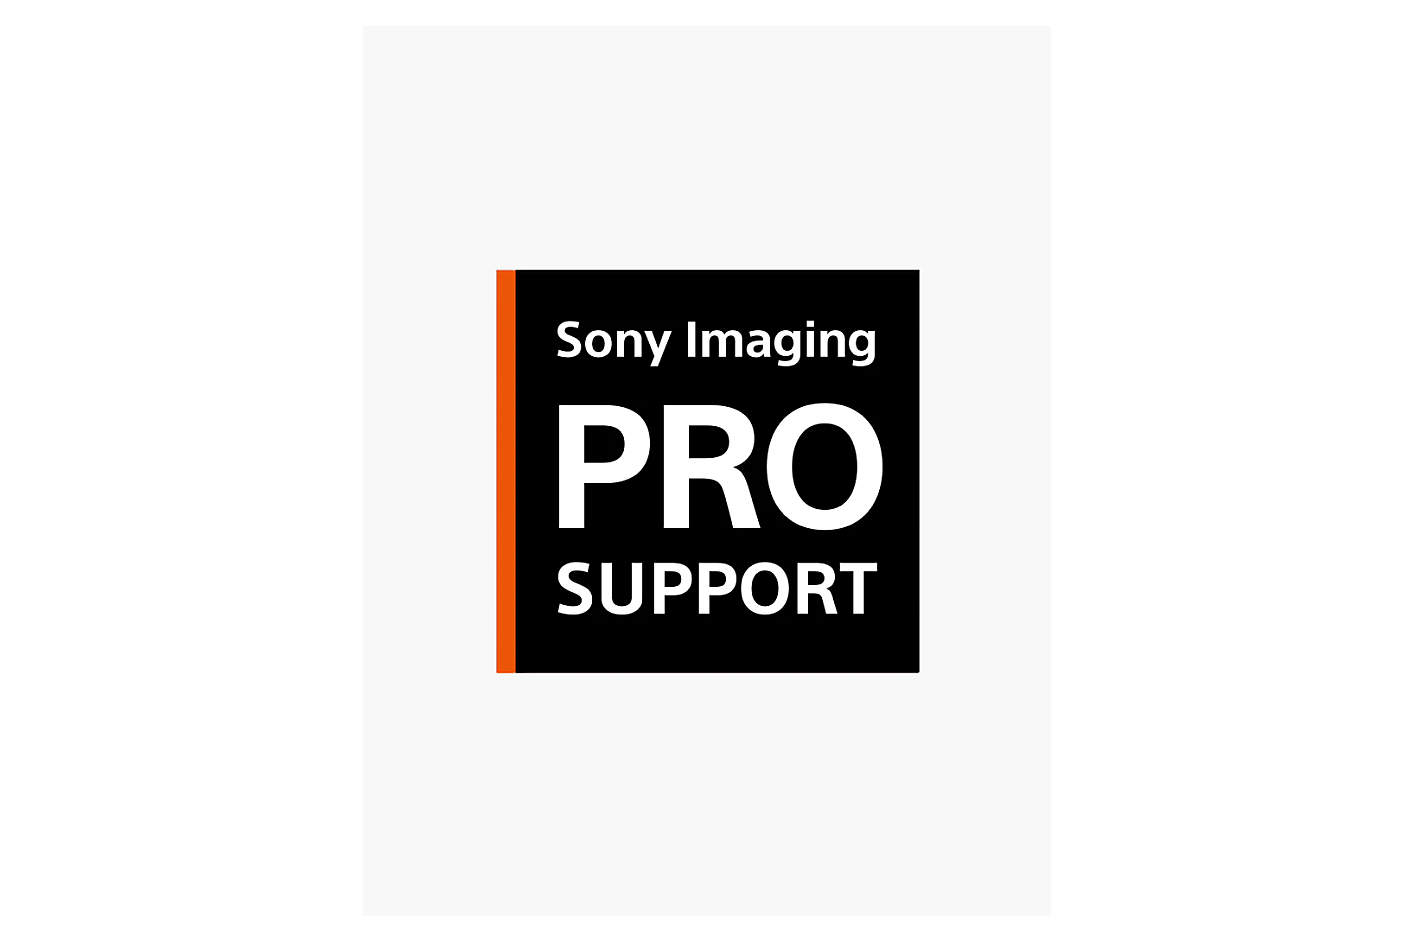 A Sony Imaging Pro Támogatás logója